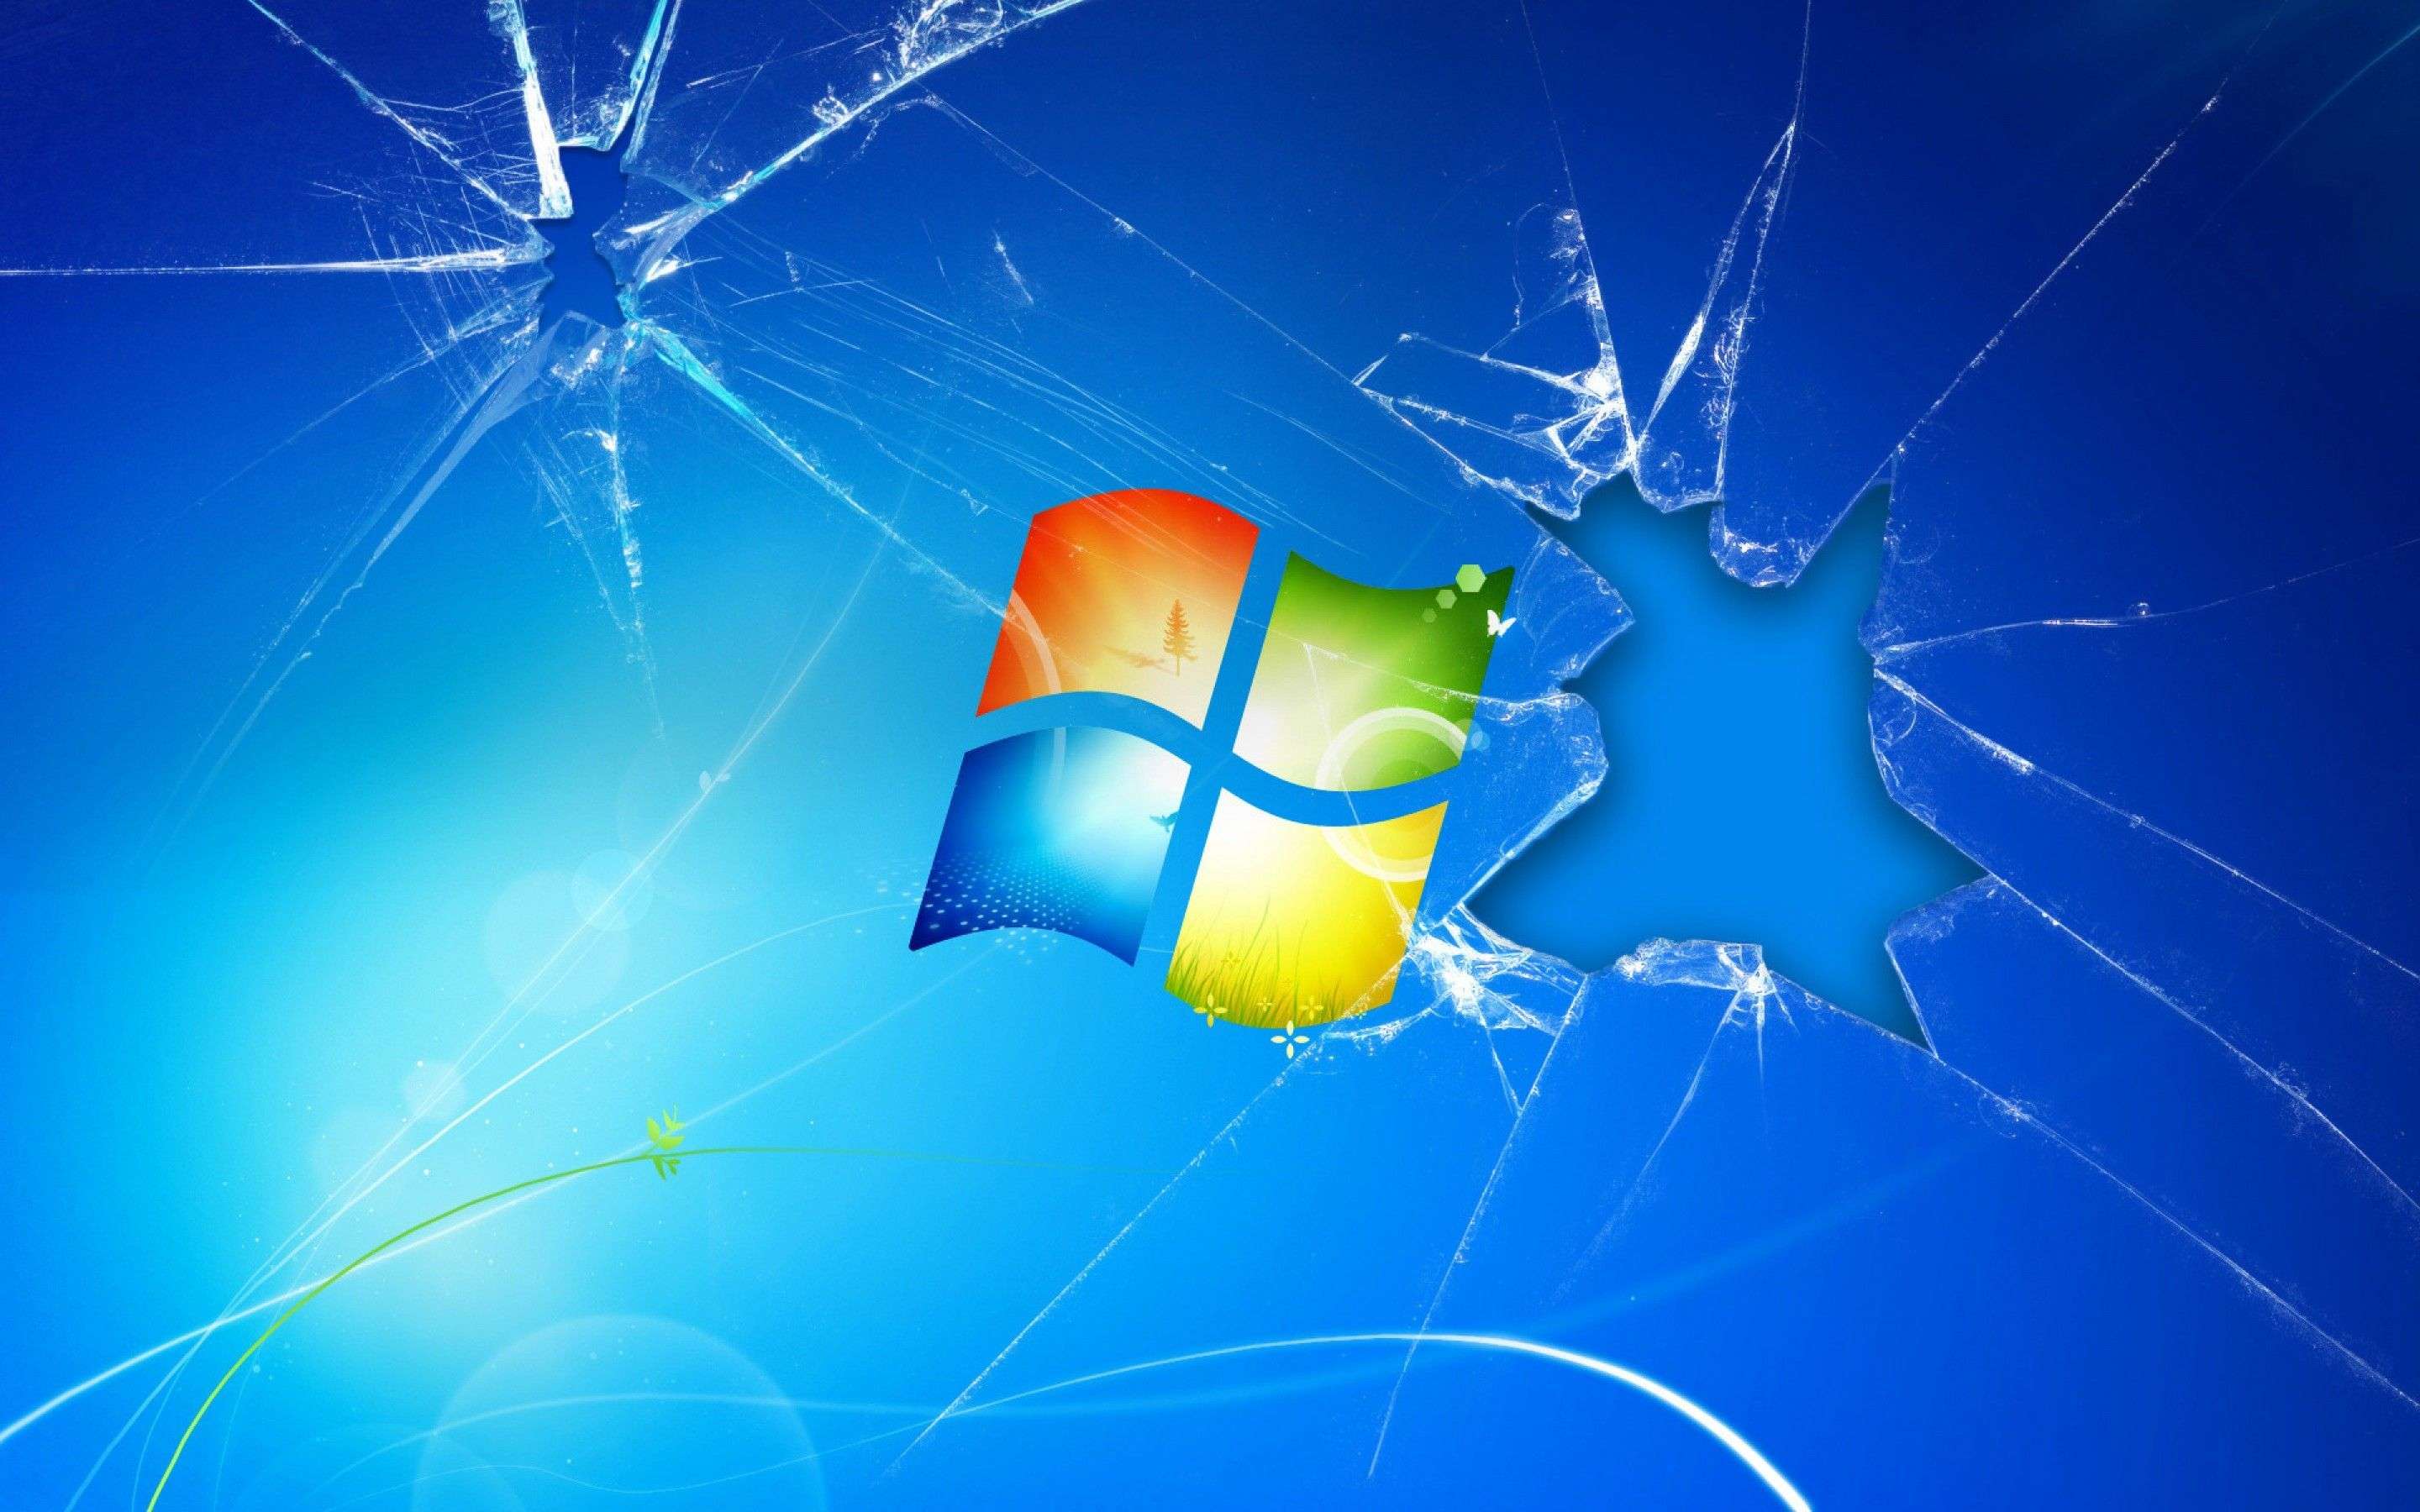 Koniec Windows 7 coraz bliżej. Microsoft podał termin zakończenia wsparcia